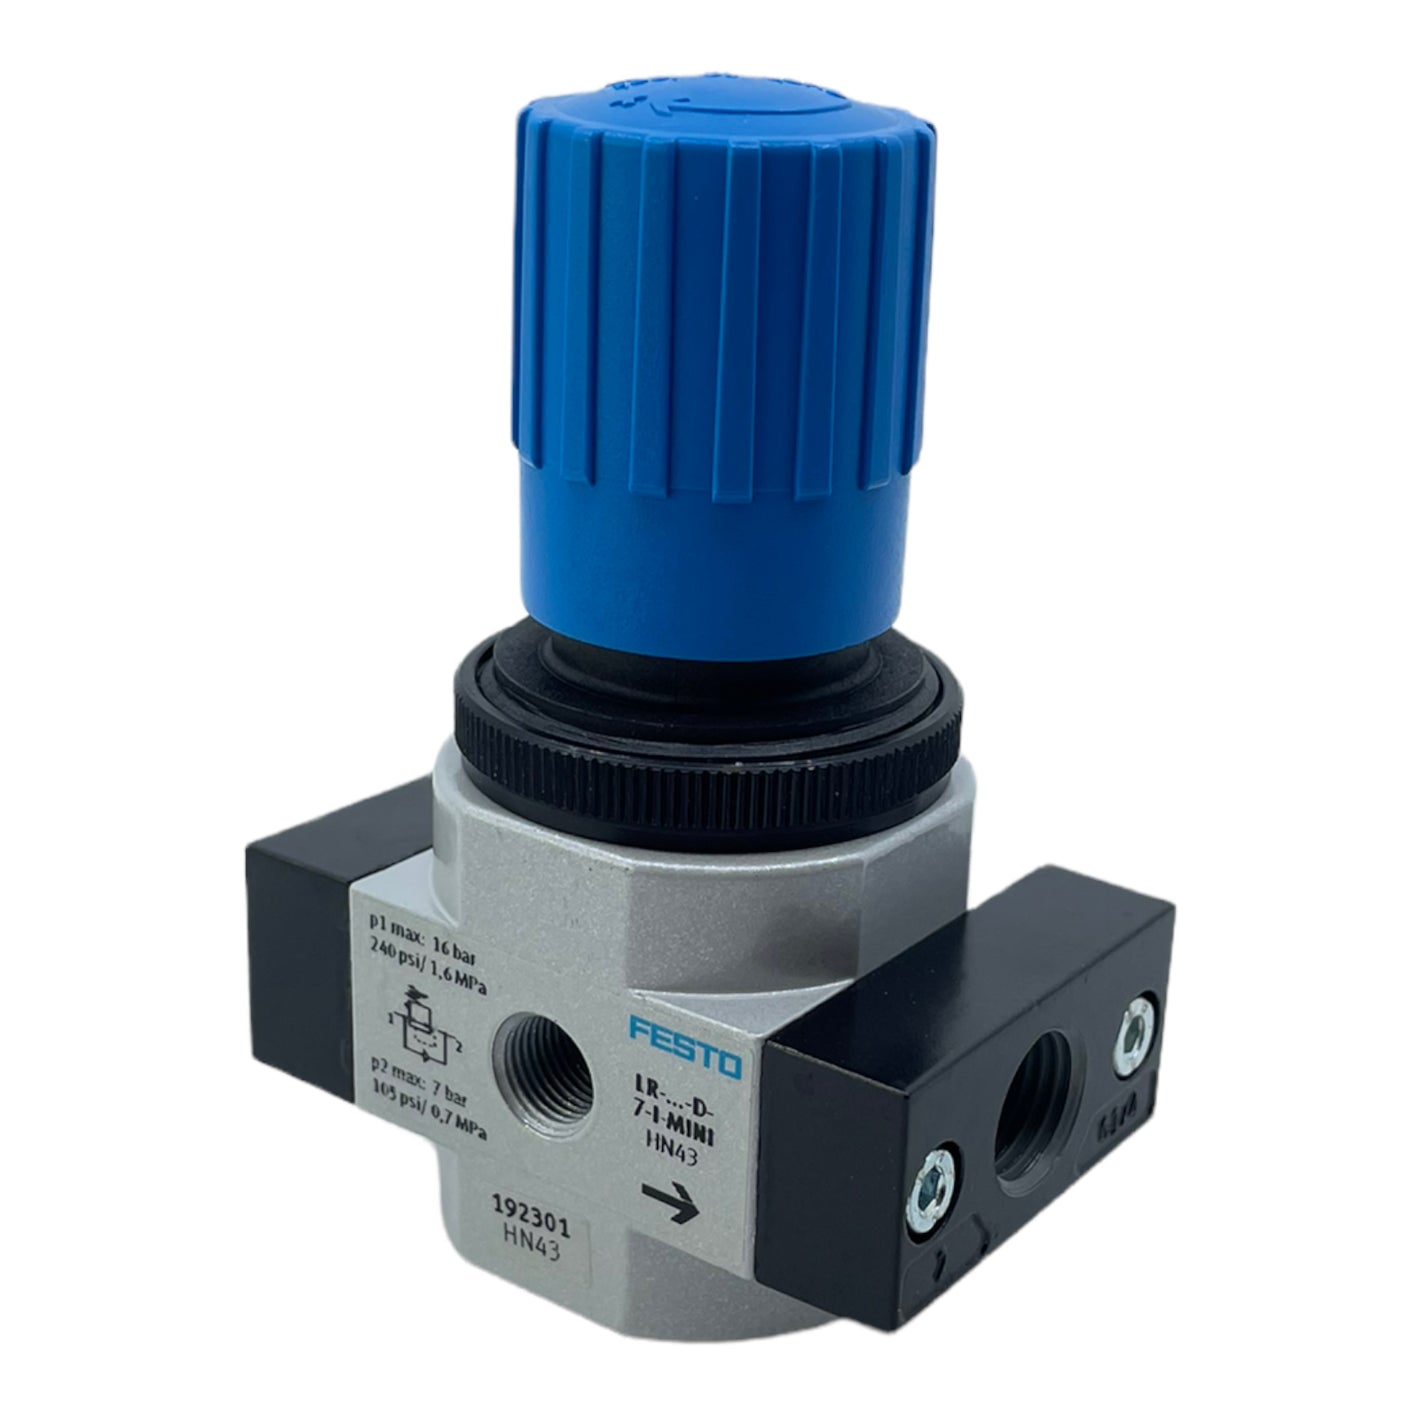 Festo LR-1/4-D-7-I-MINI pressure control valve 192301 pneumatic valve 